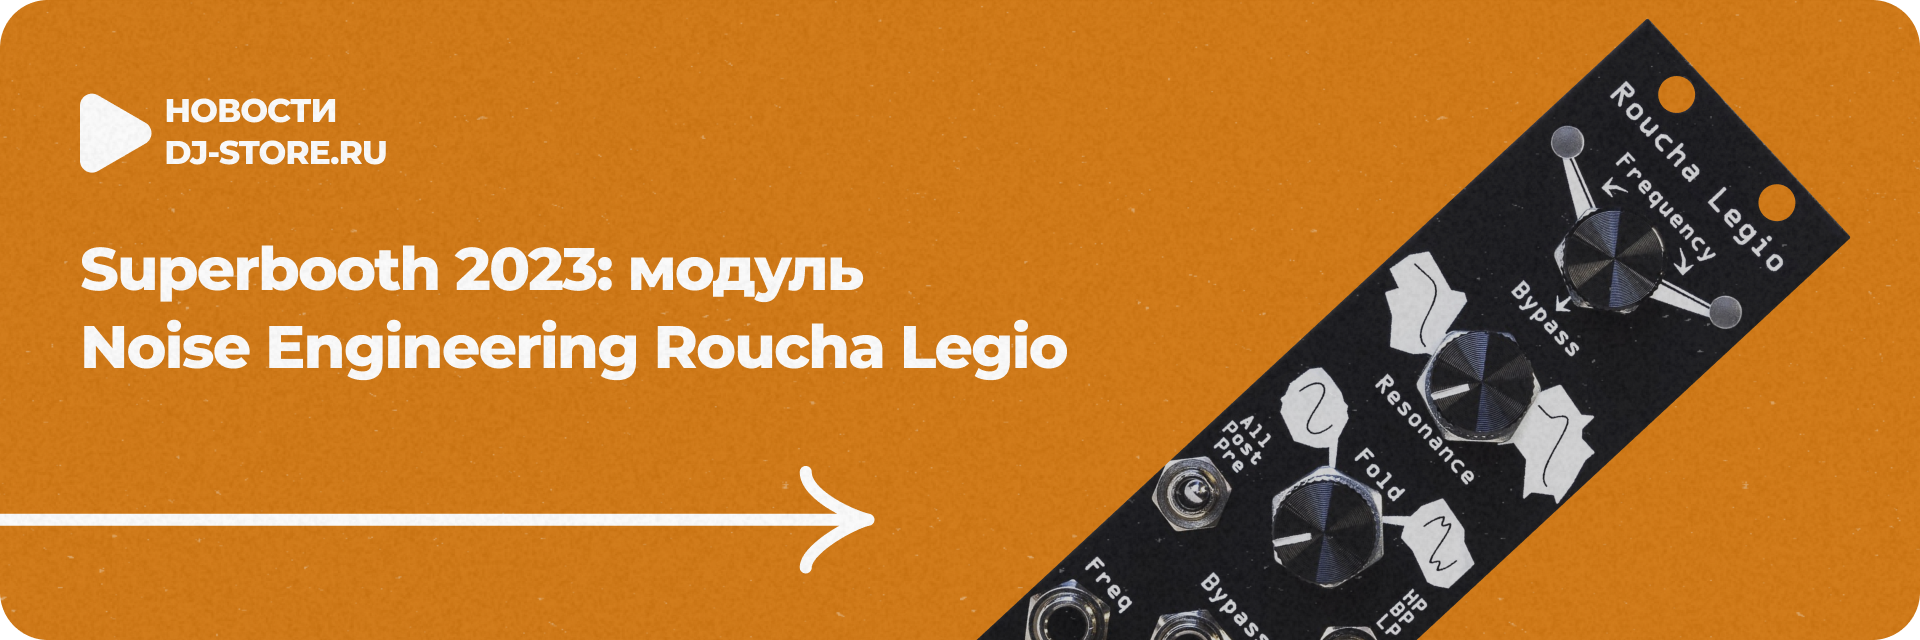 Noise Engineering Roucha Legio